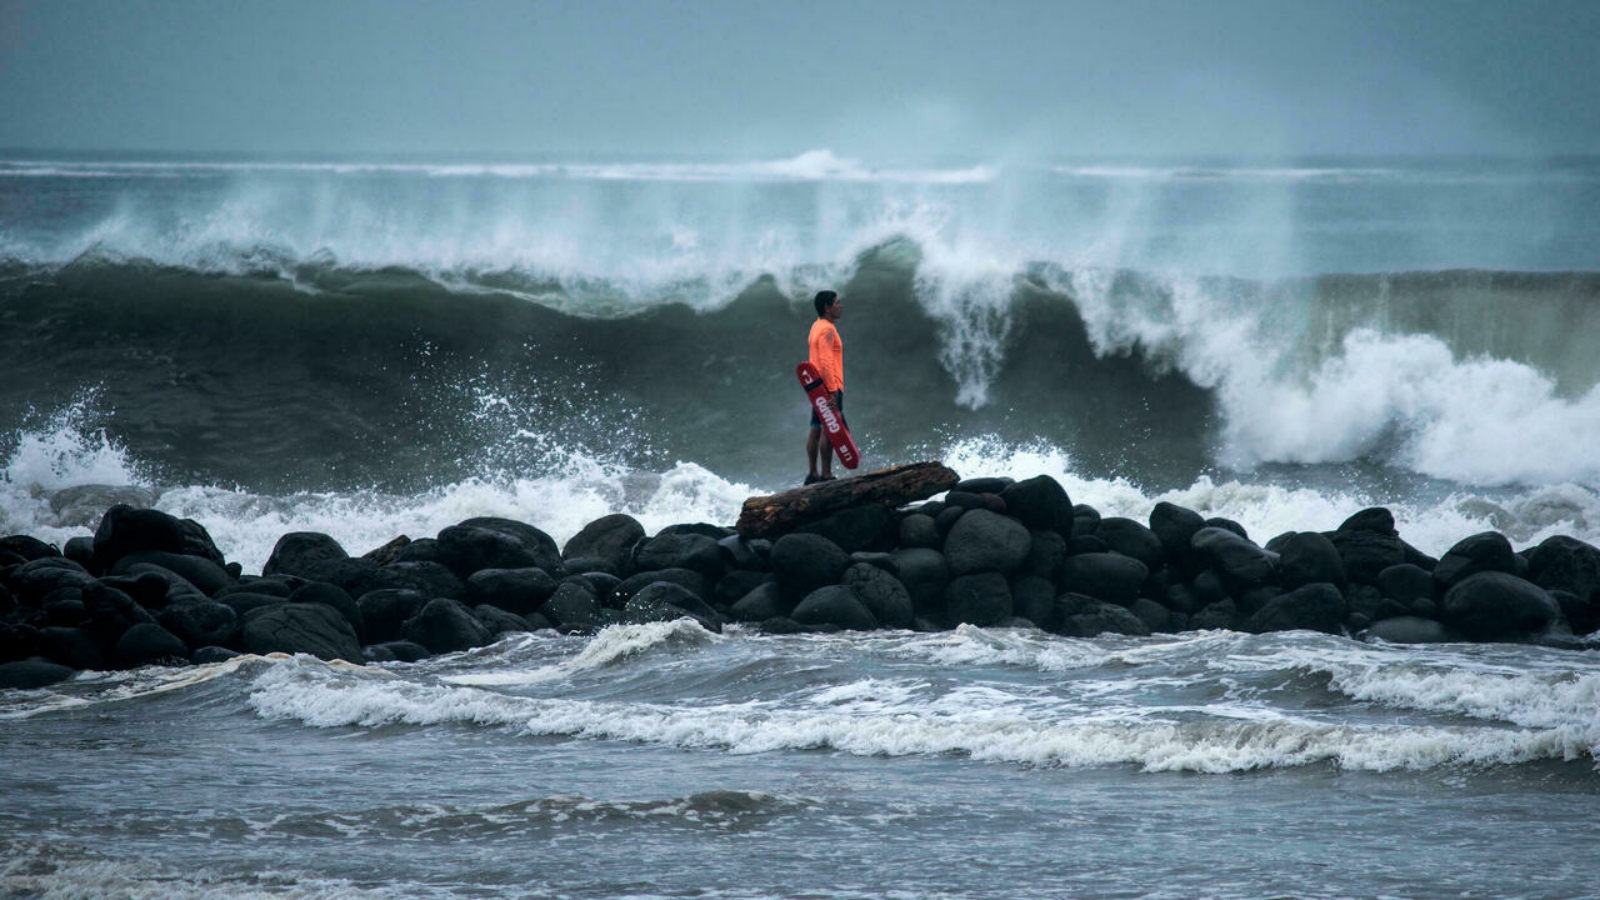 أحد حراس الإنقاذ يشاهد الأمواج وهي تتحطم على الشاطئ في بوكا ديل ريو في ولاية فيراكروز بشرق المكسيك مع اقتراب إعصار غريس. بتاريخ 21 آب/ أغسطس 2021.